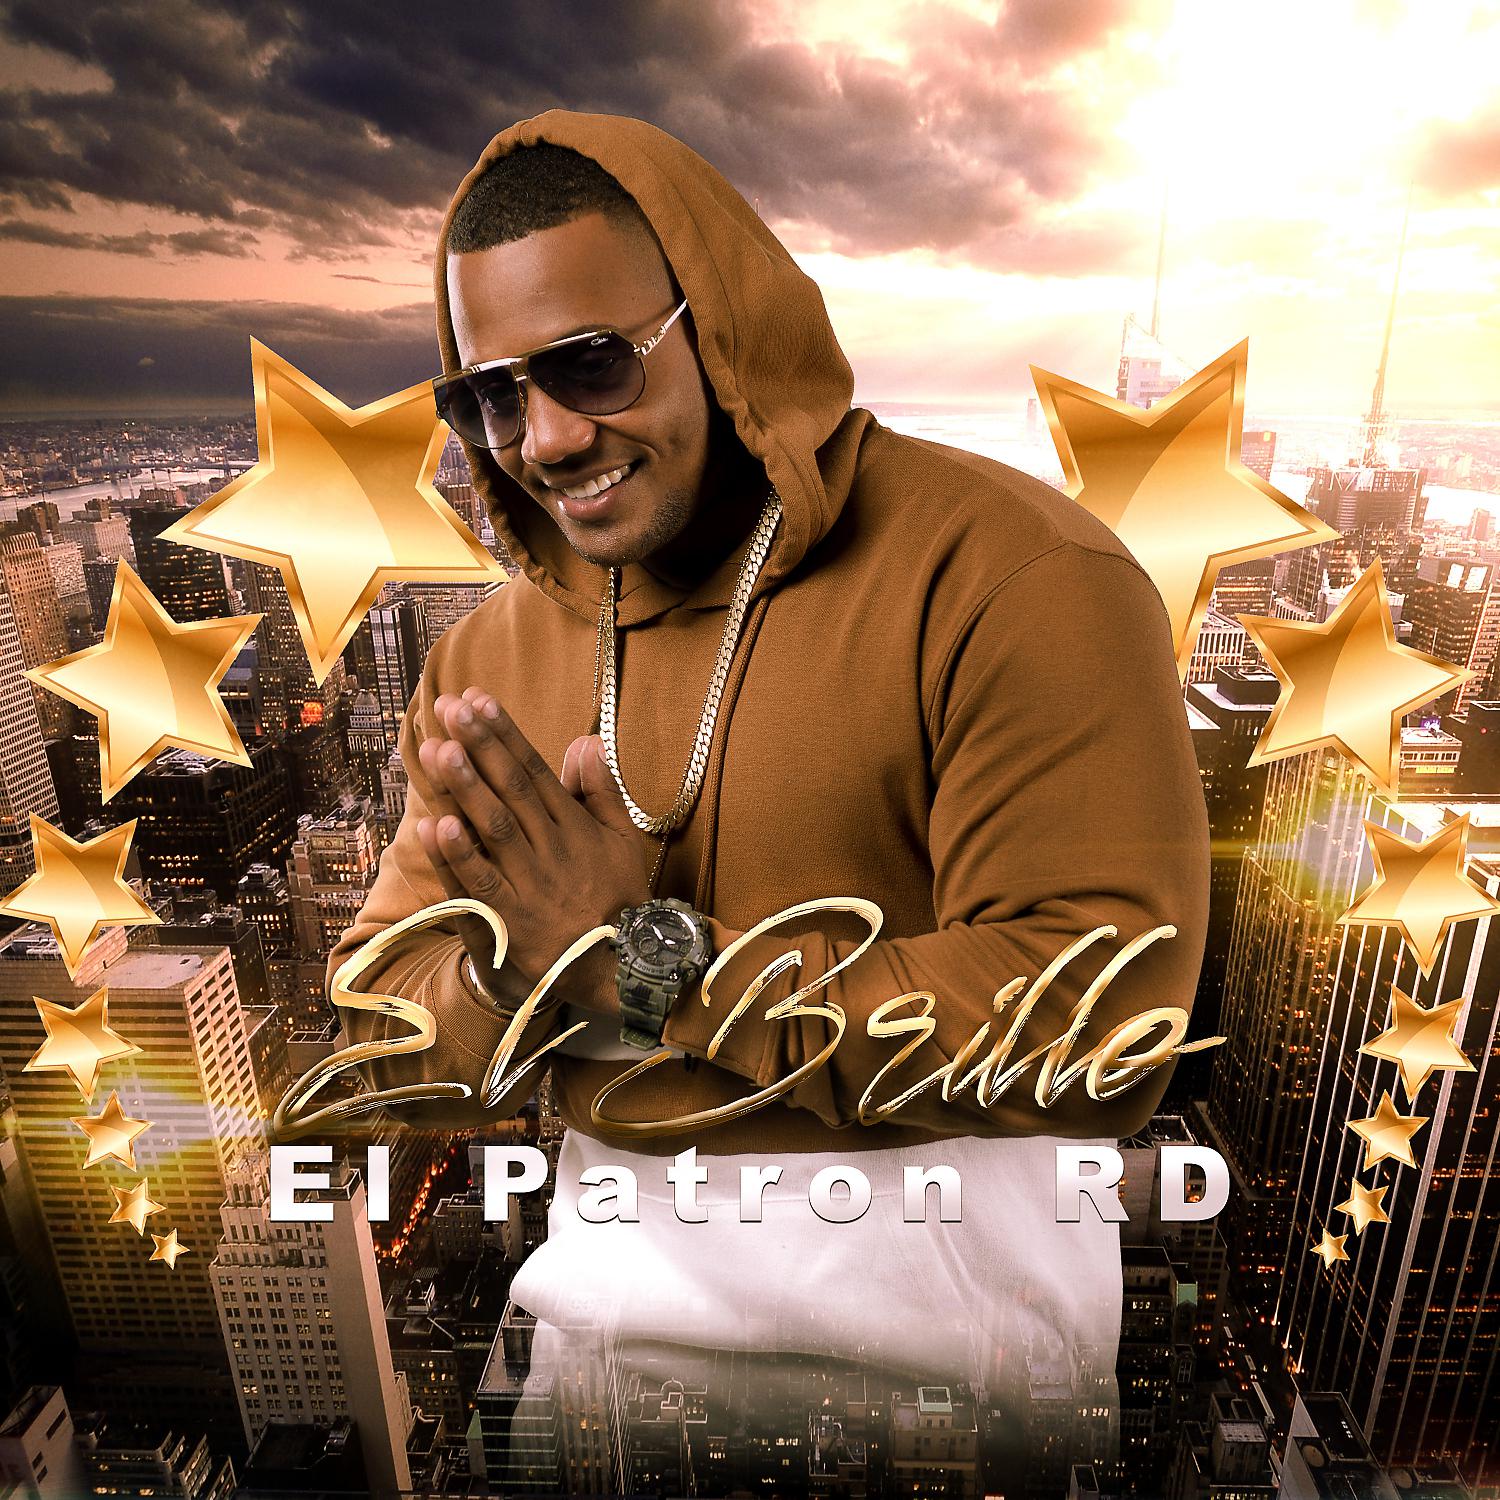 Постер альбома El Brillo